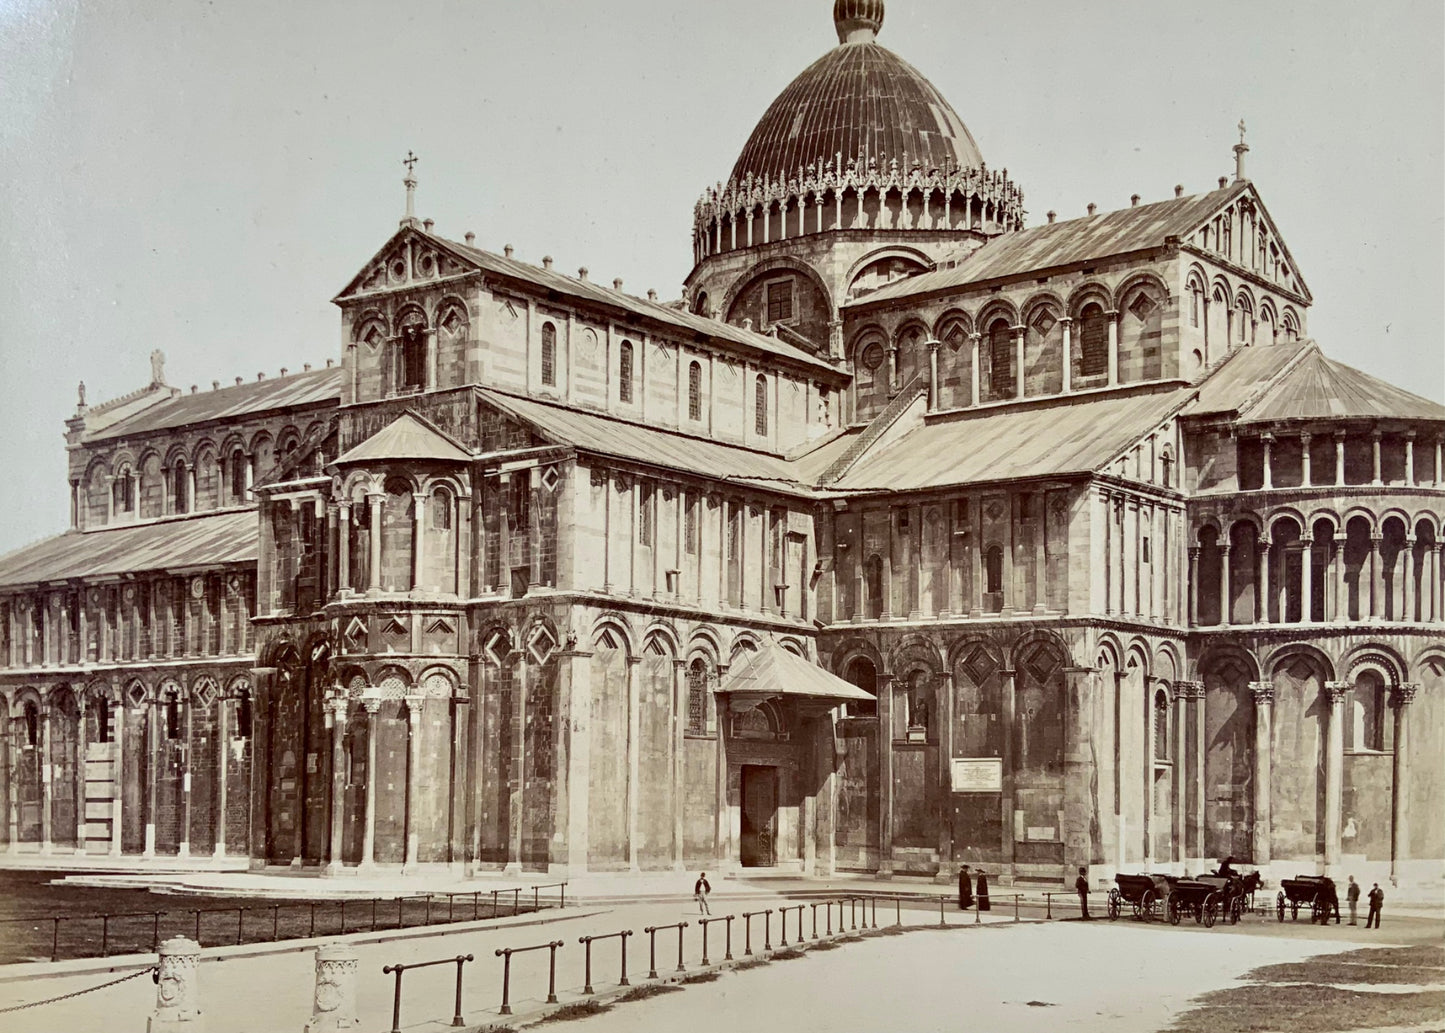 1870s Giacomo Brogi, Pisa, il Duomo, architecture, albumen print